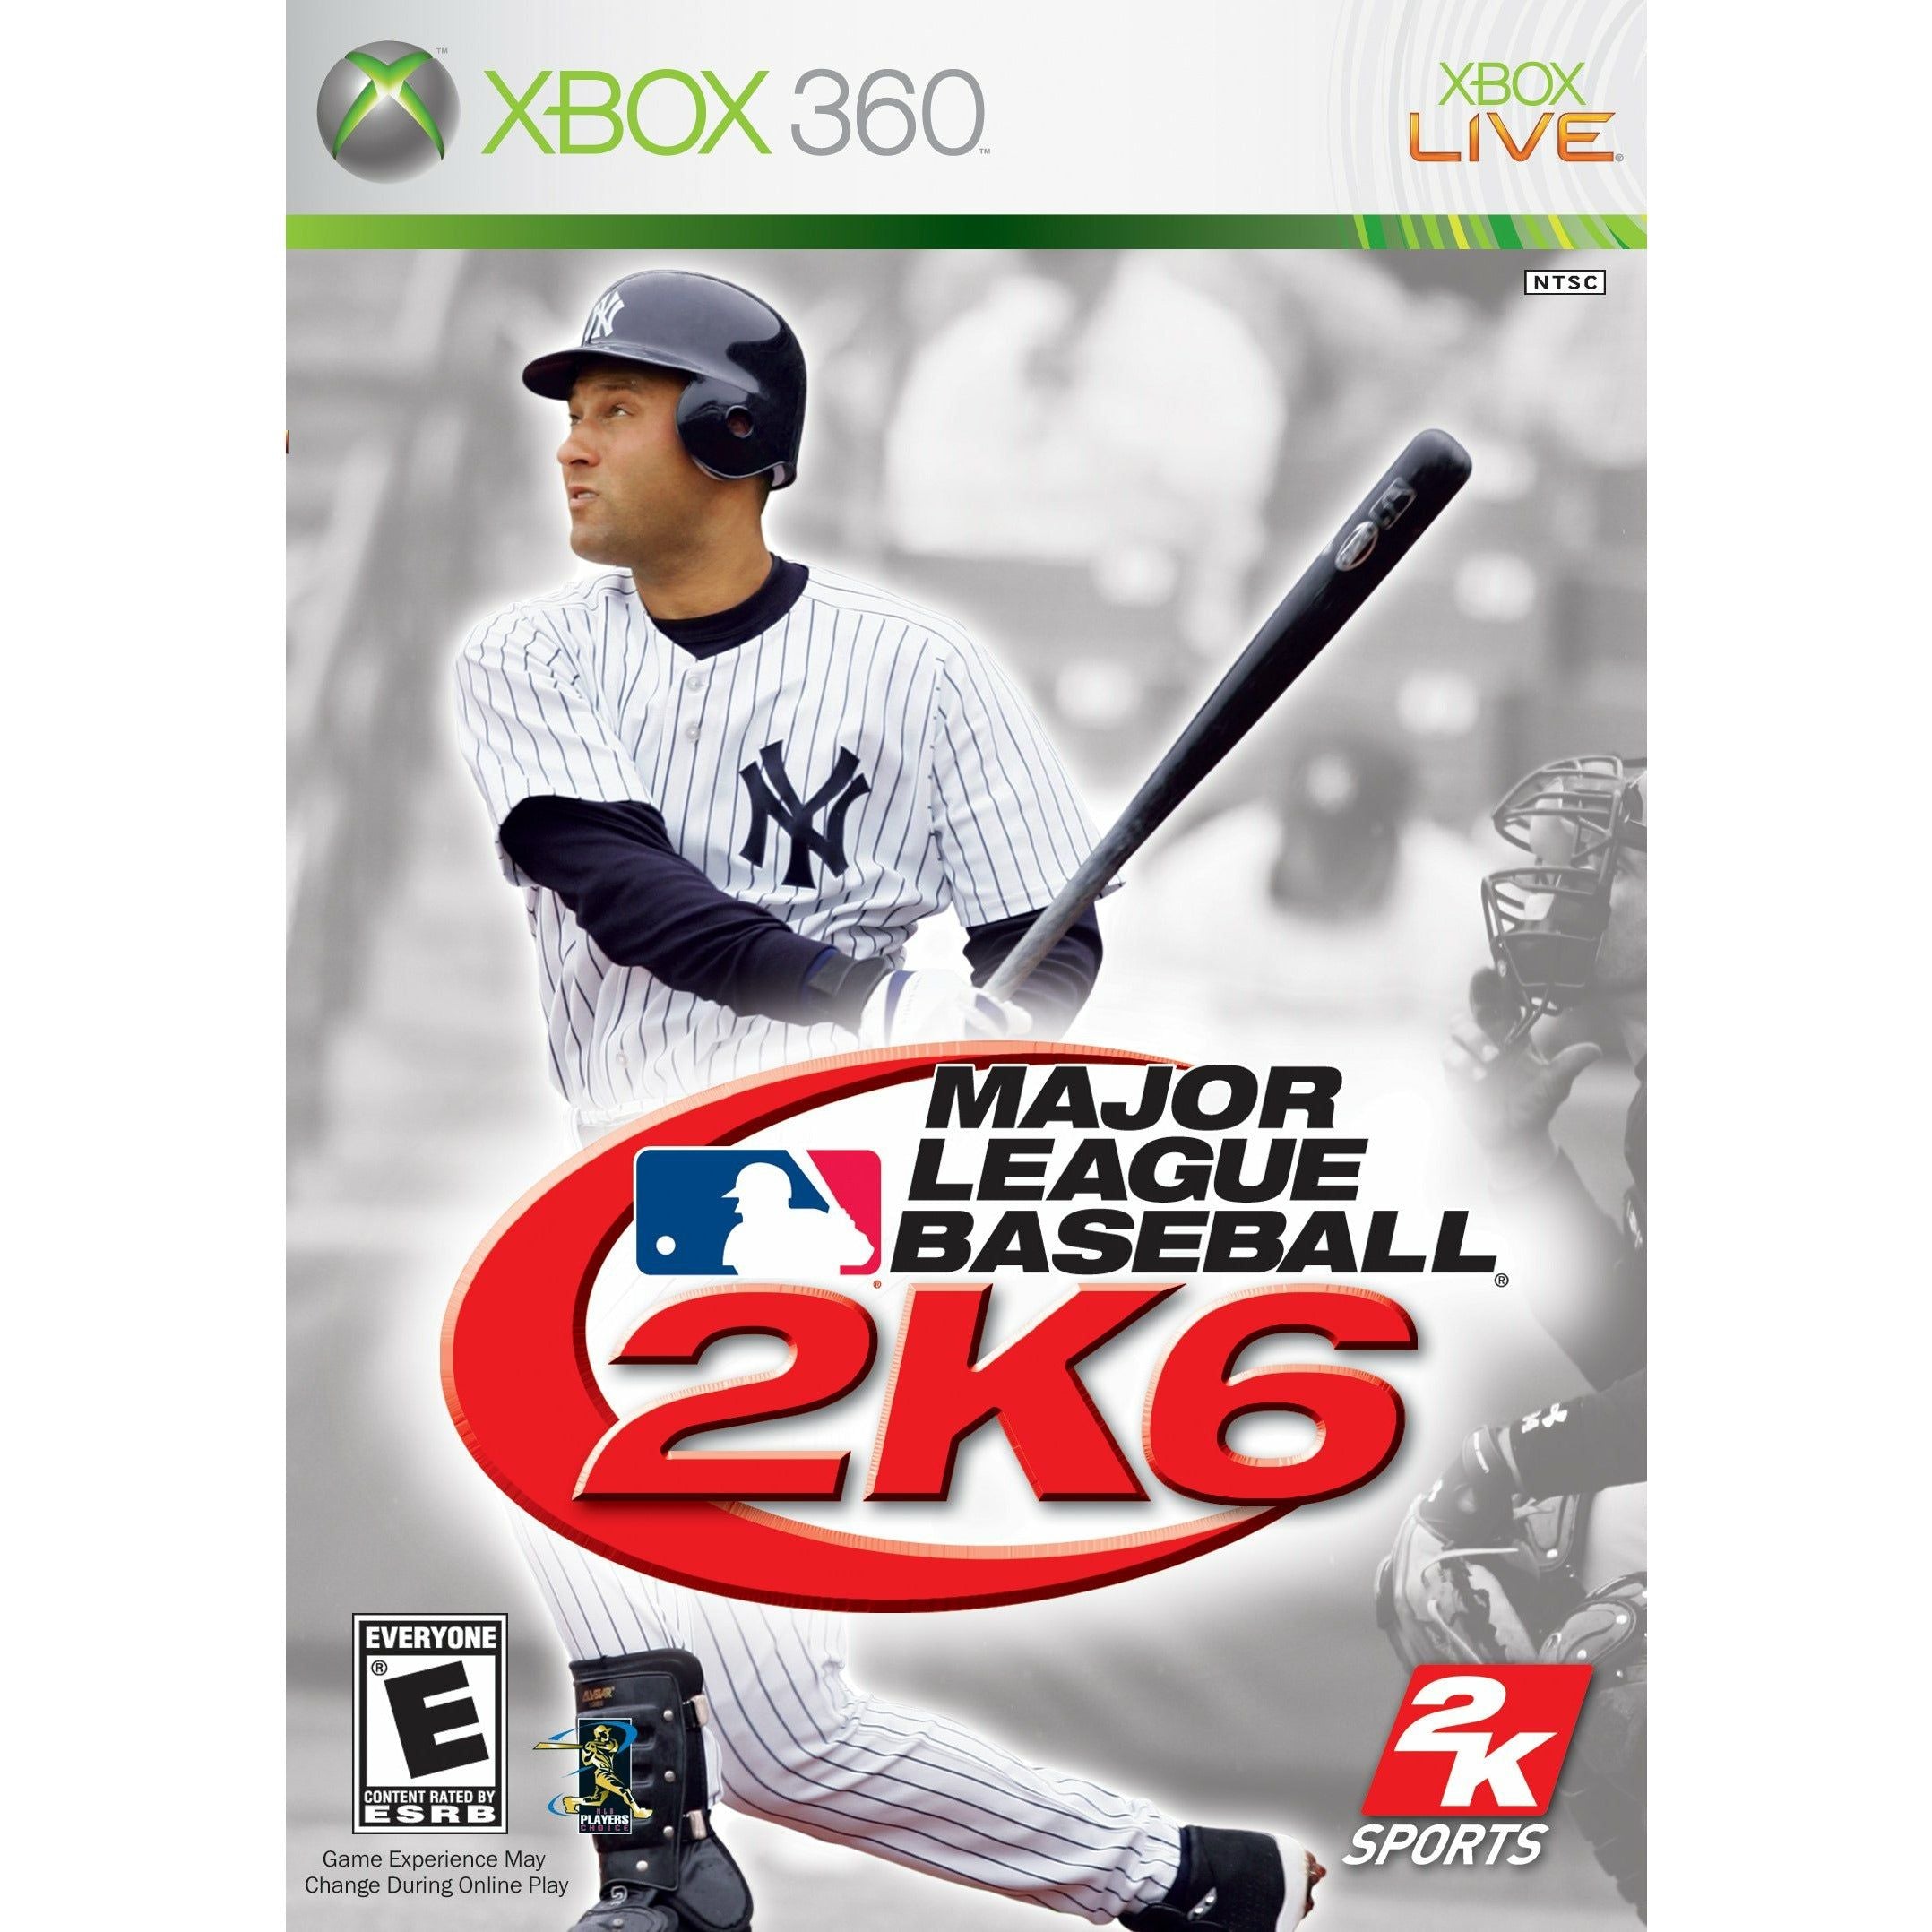 XBOX 360 - Major League Baseball 2K6